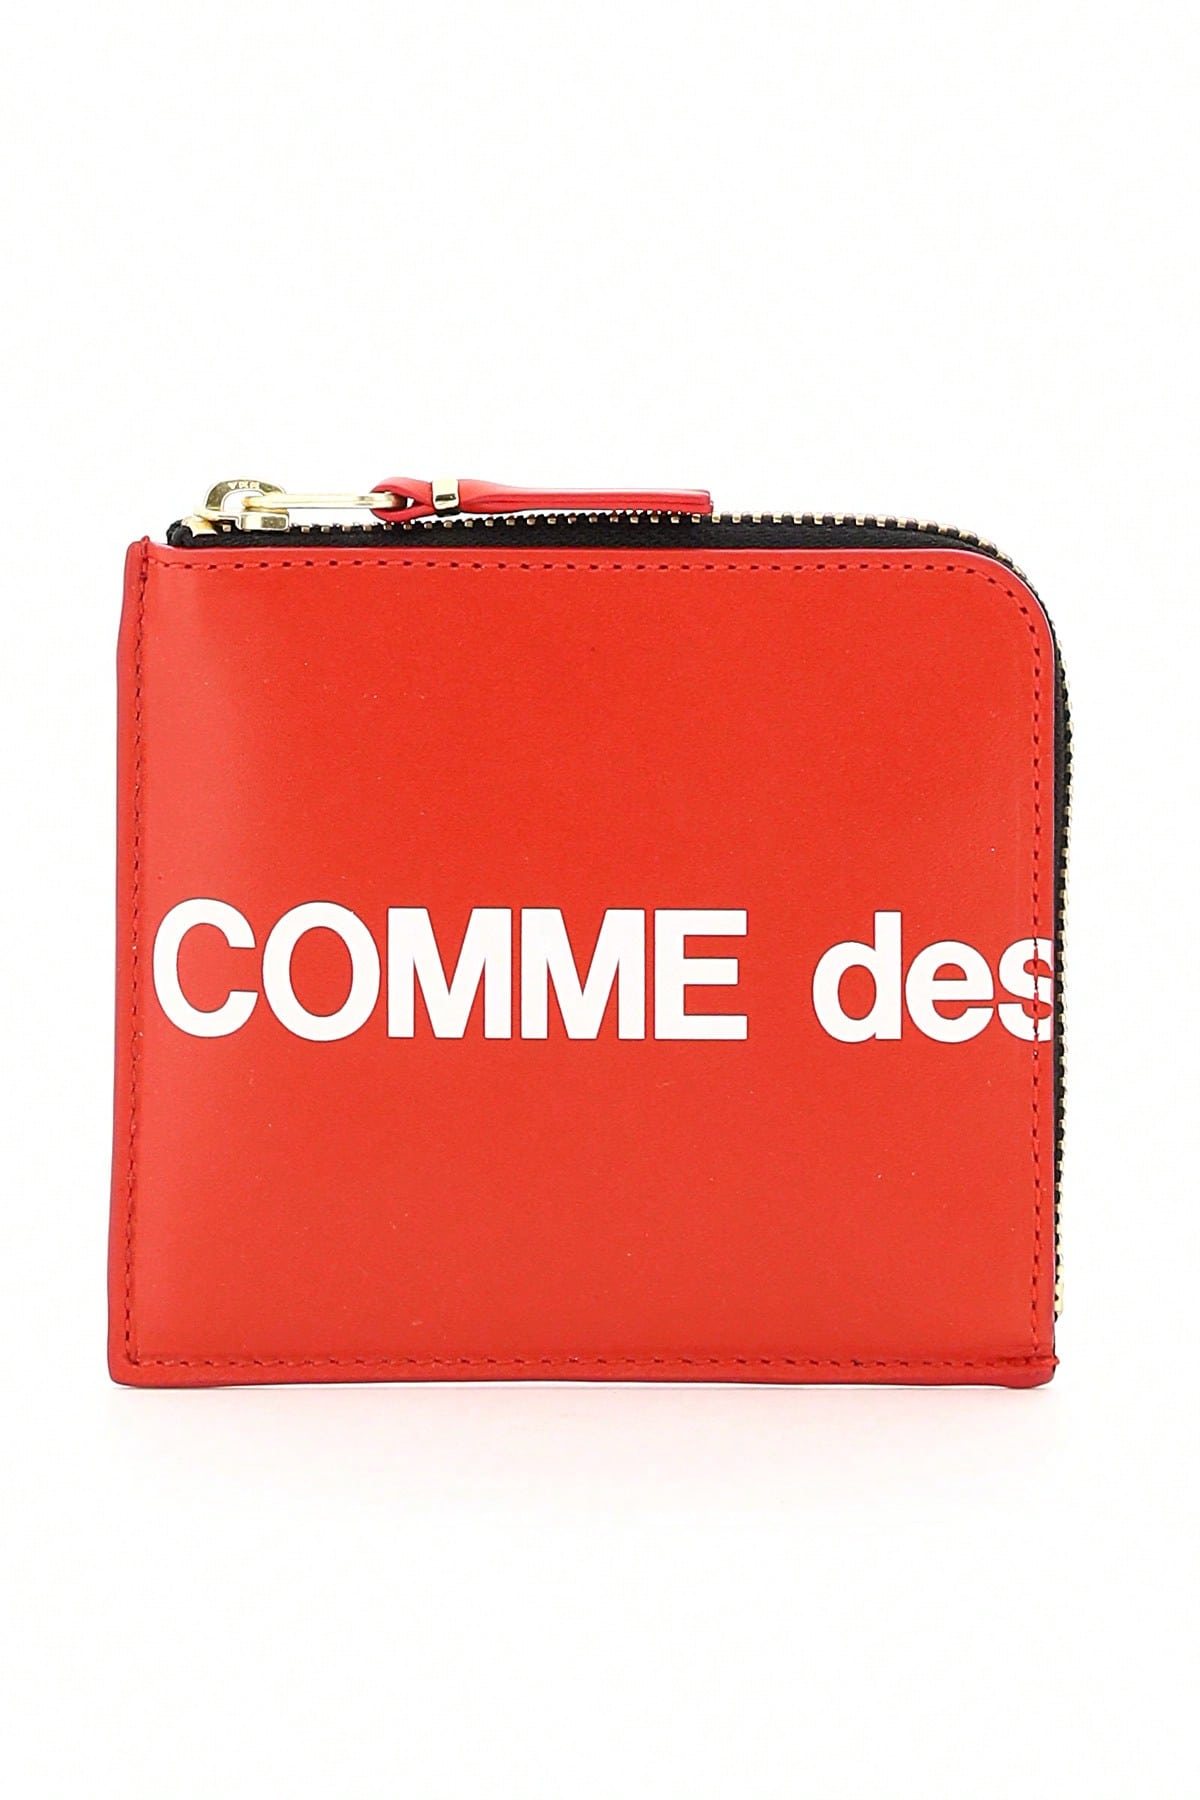 аппаратный кошелек d cent biometric wallet Кошелек Comme Des Garcons Кошелек с огромным логотипом, красный